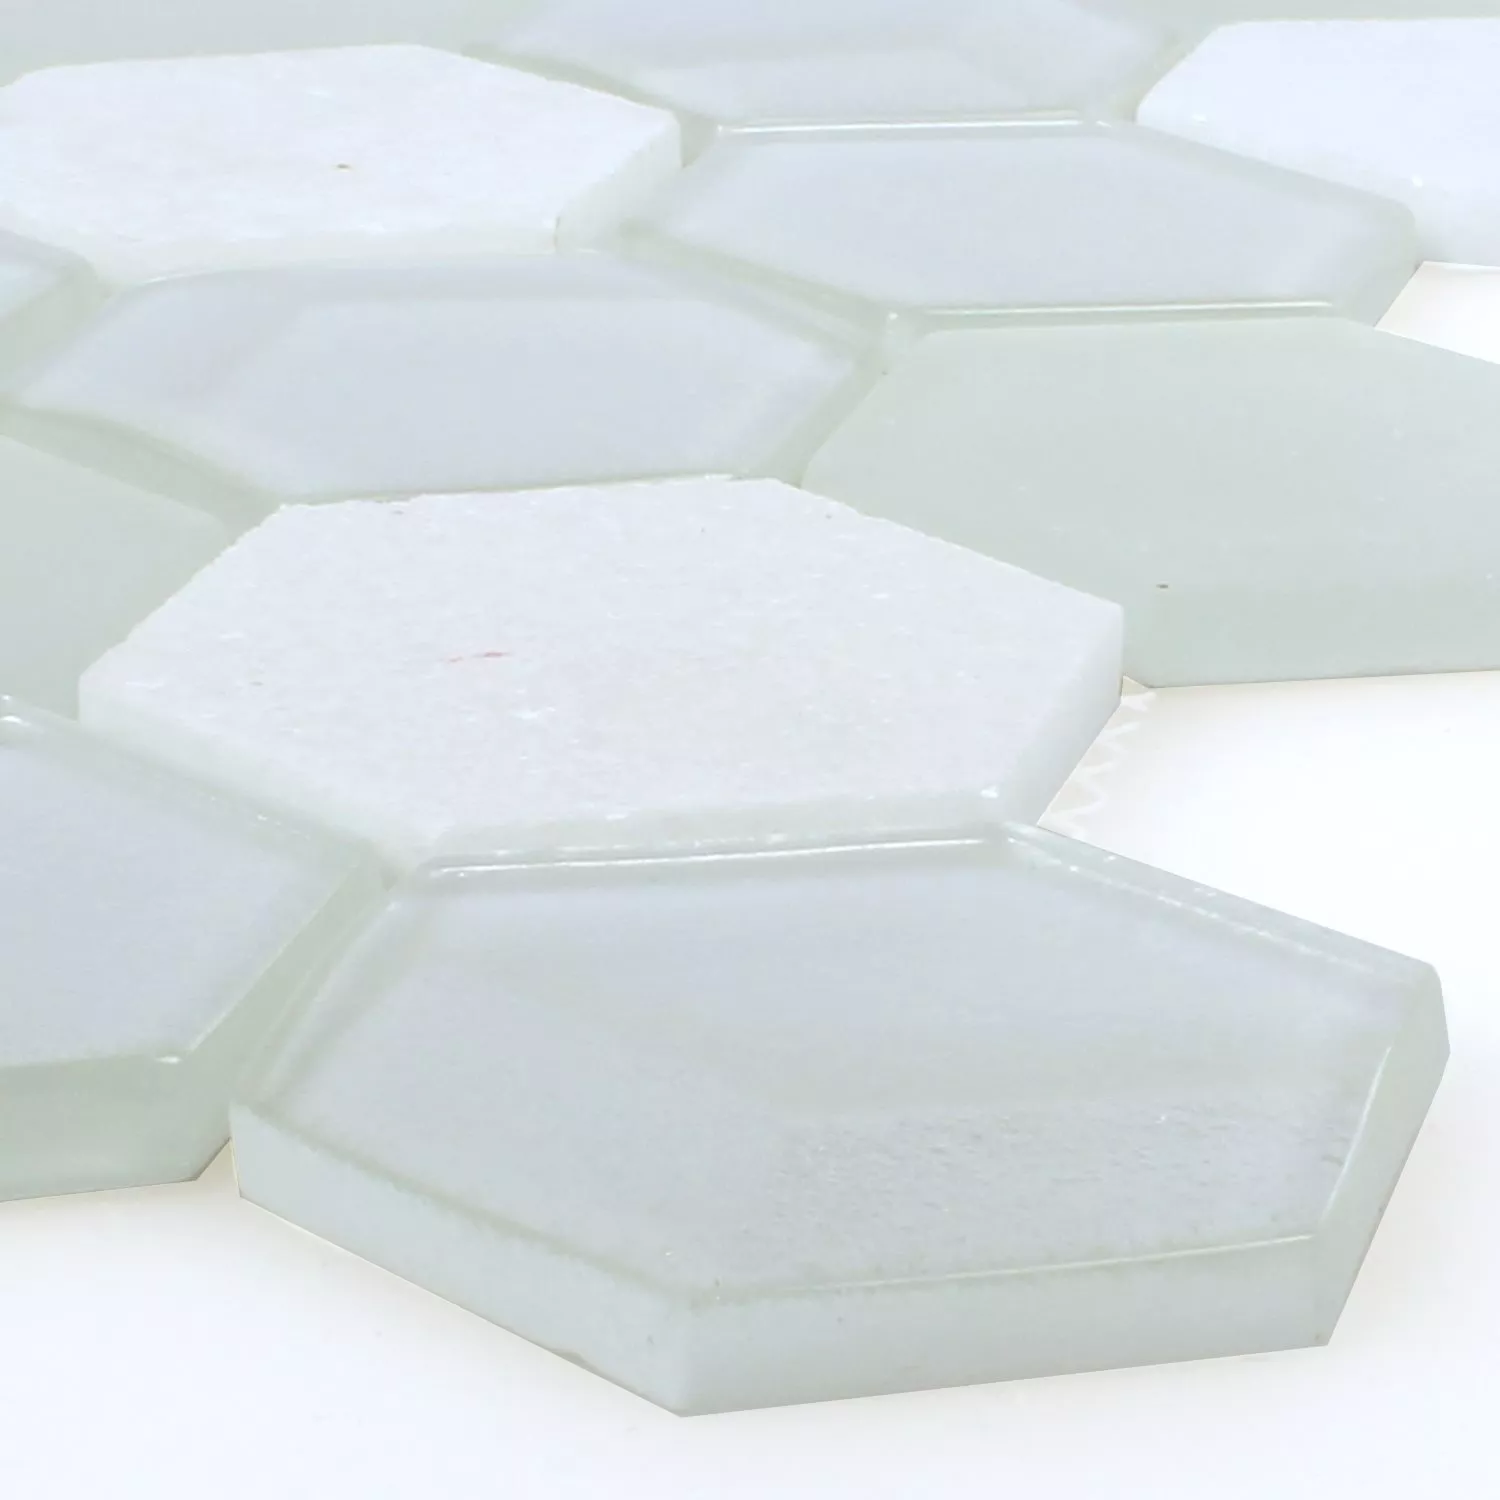 Azulejos De Mosaico Cristal Piedra Natural Hexagonales Blanco 3D